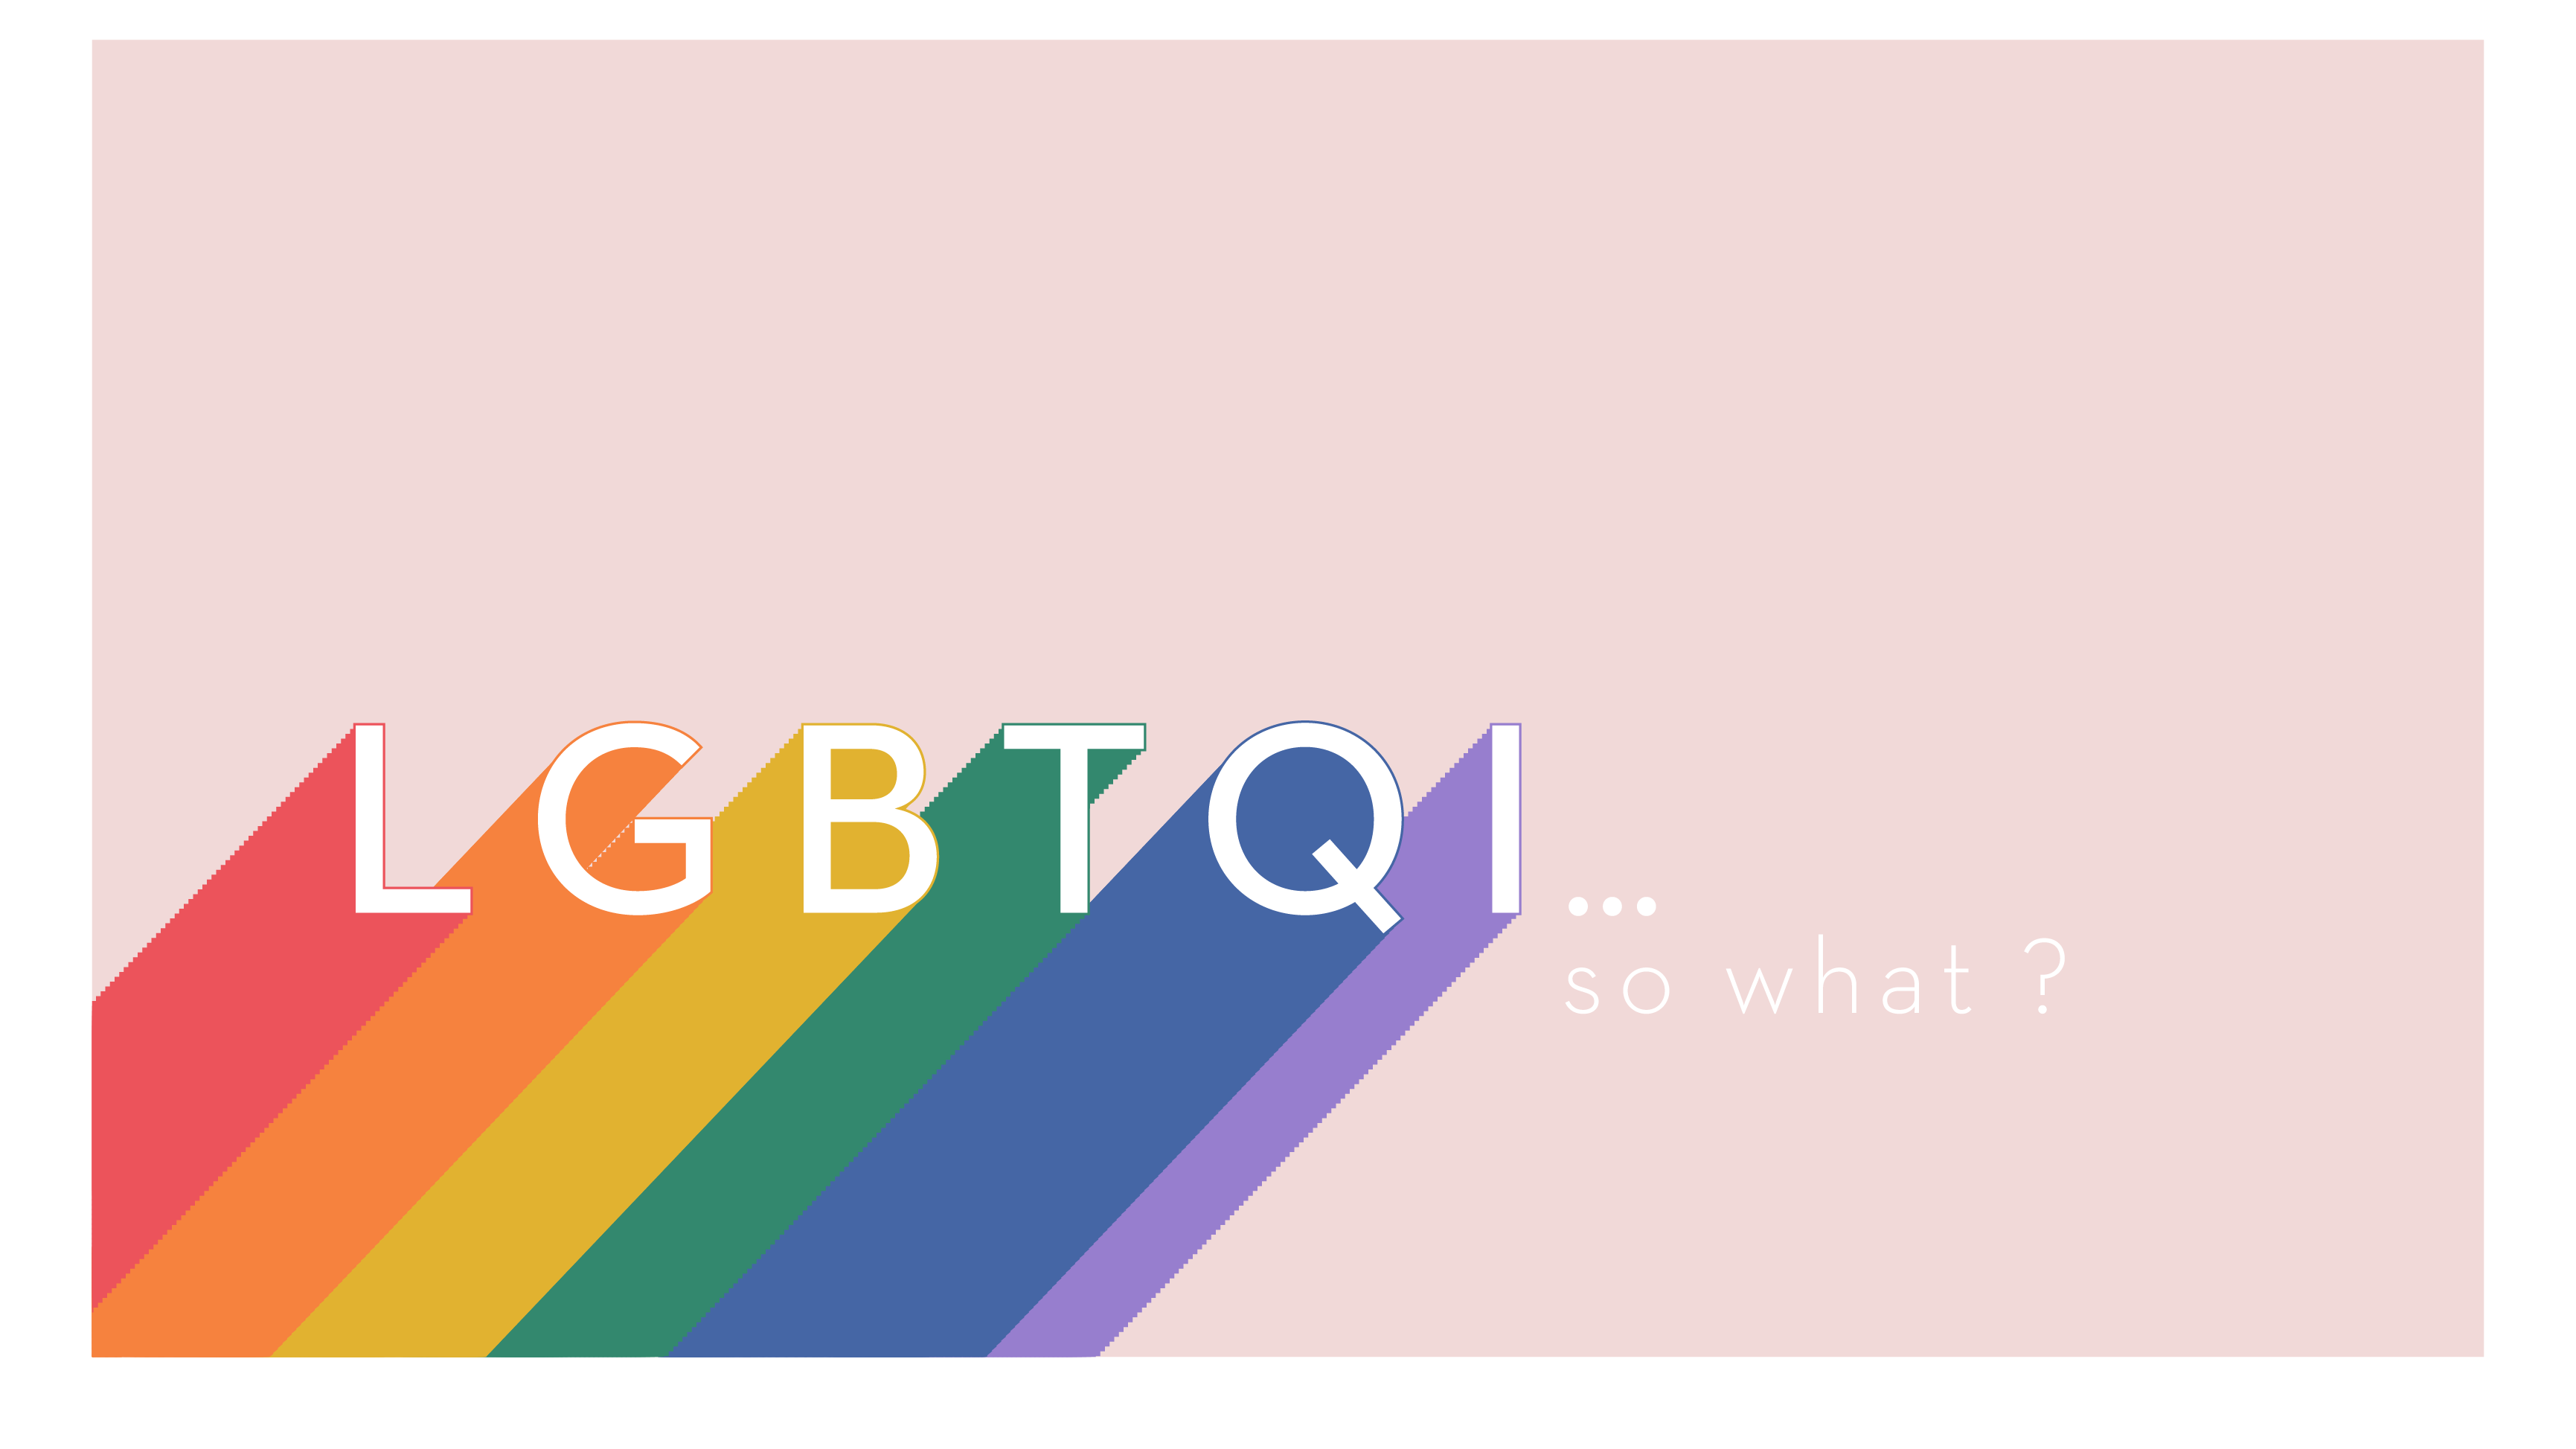 Visuel de notre conférence interactive "LGBTQI+... so what"